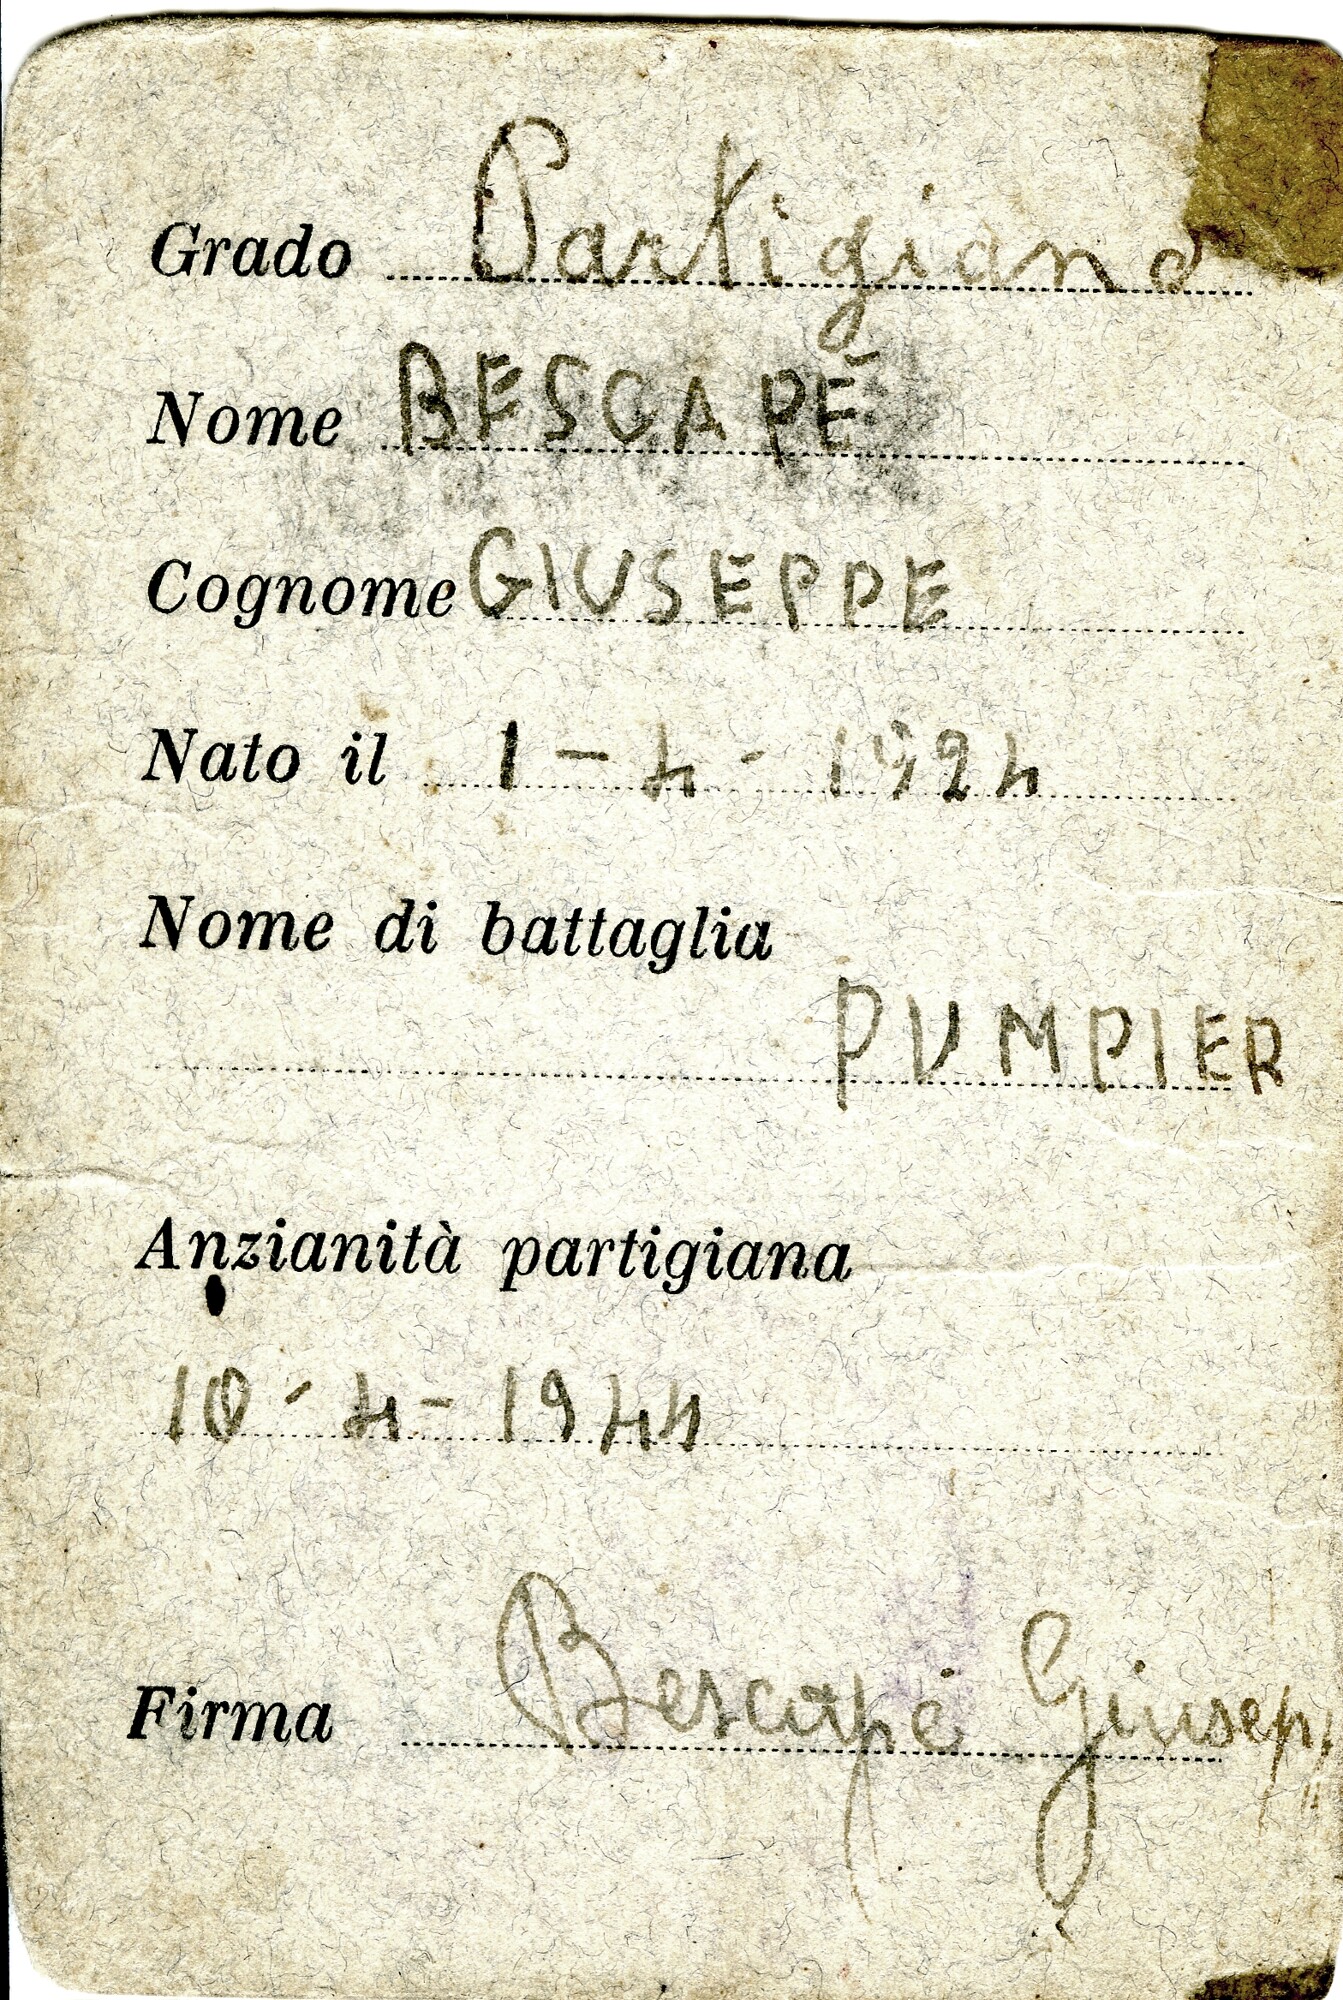 Archivio Bescapé - giuseppe-bescape-documenti-personali-da-partigiano-1.jpg